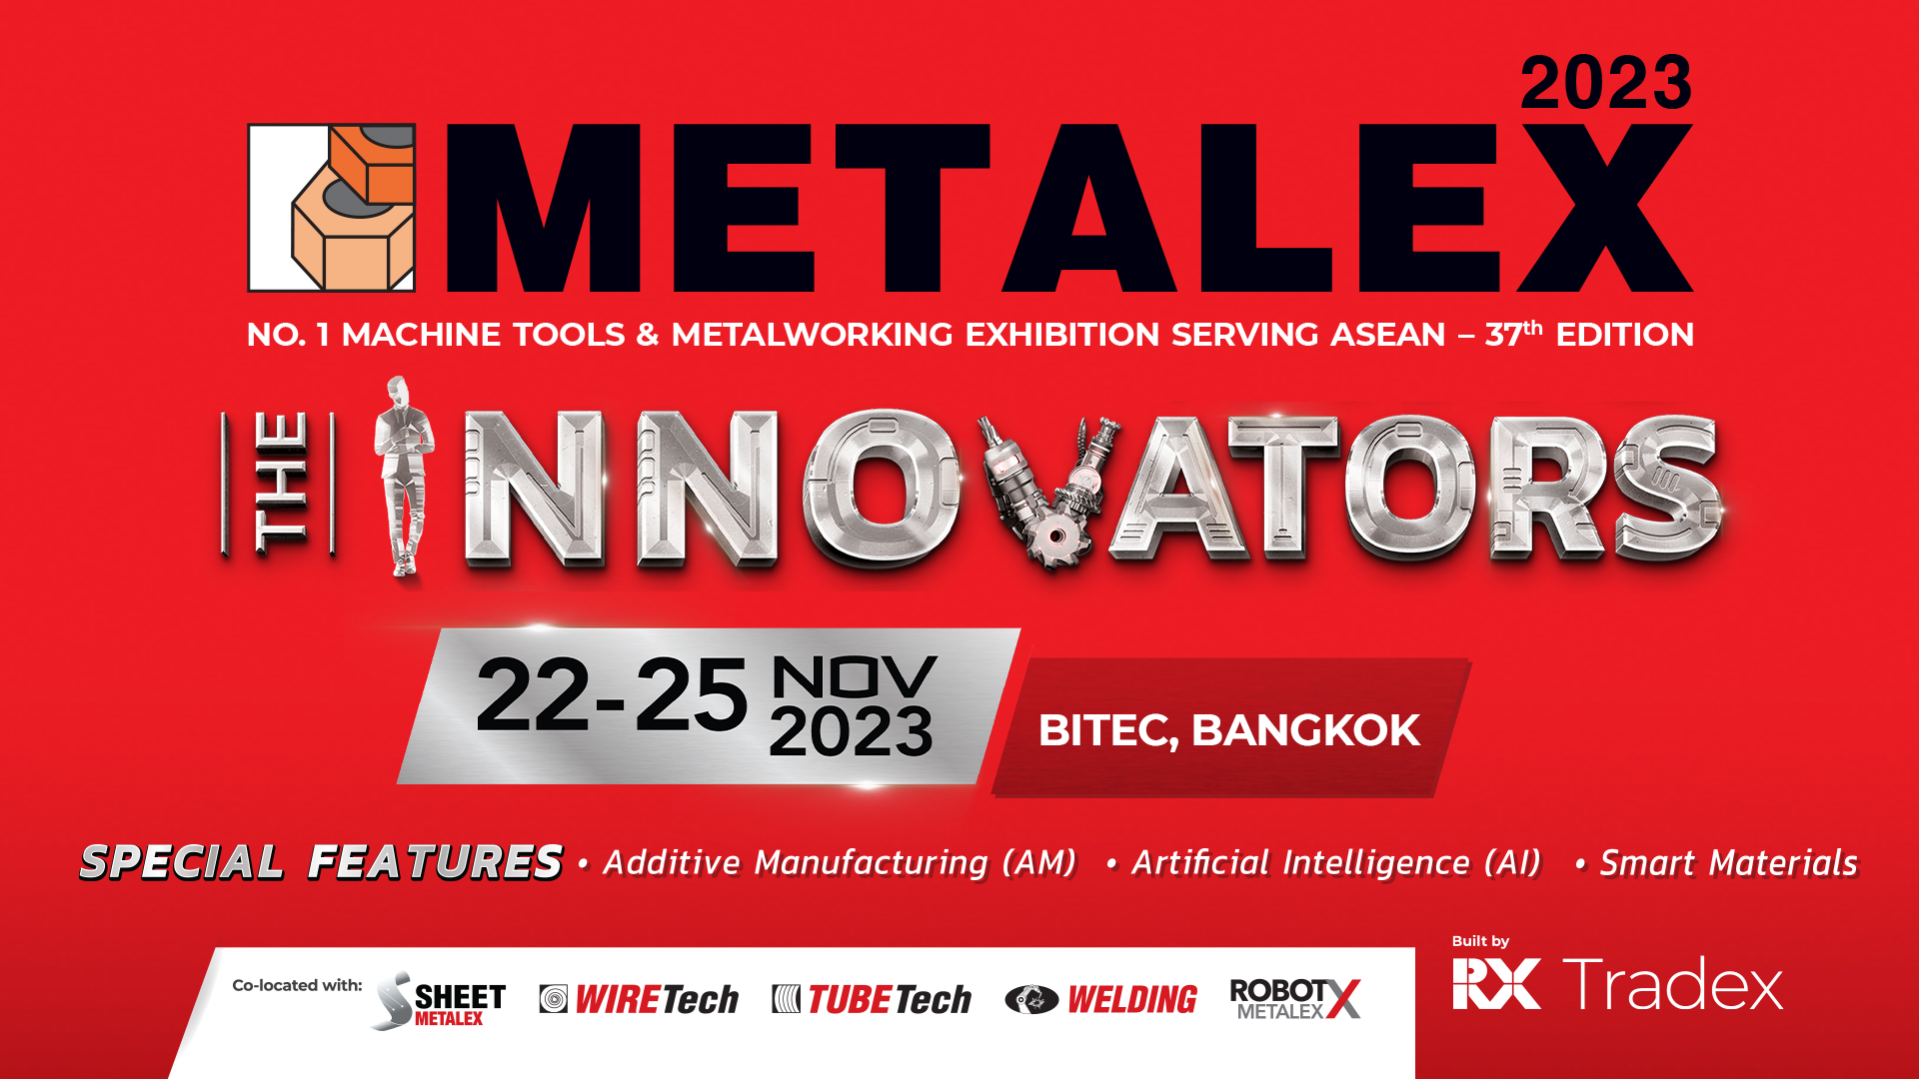 METALEX | No. 1 Machine Tools & Metalworking Exhibition Serving ASEAN